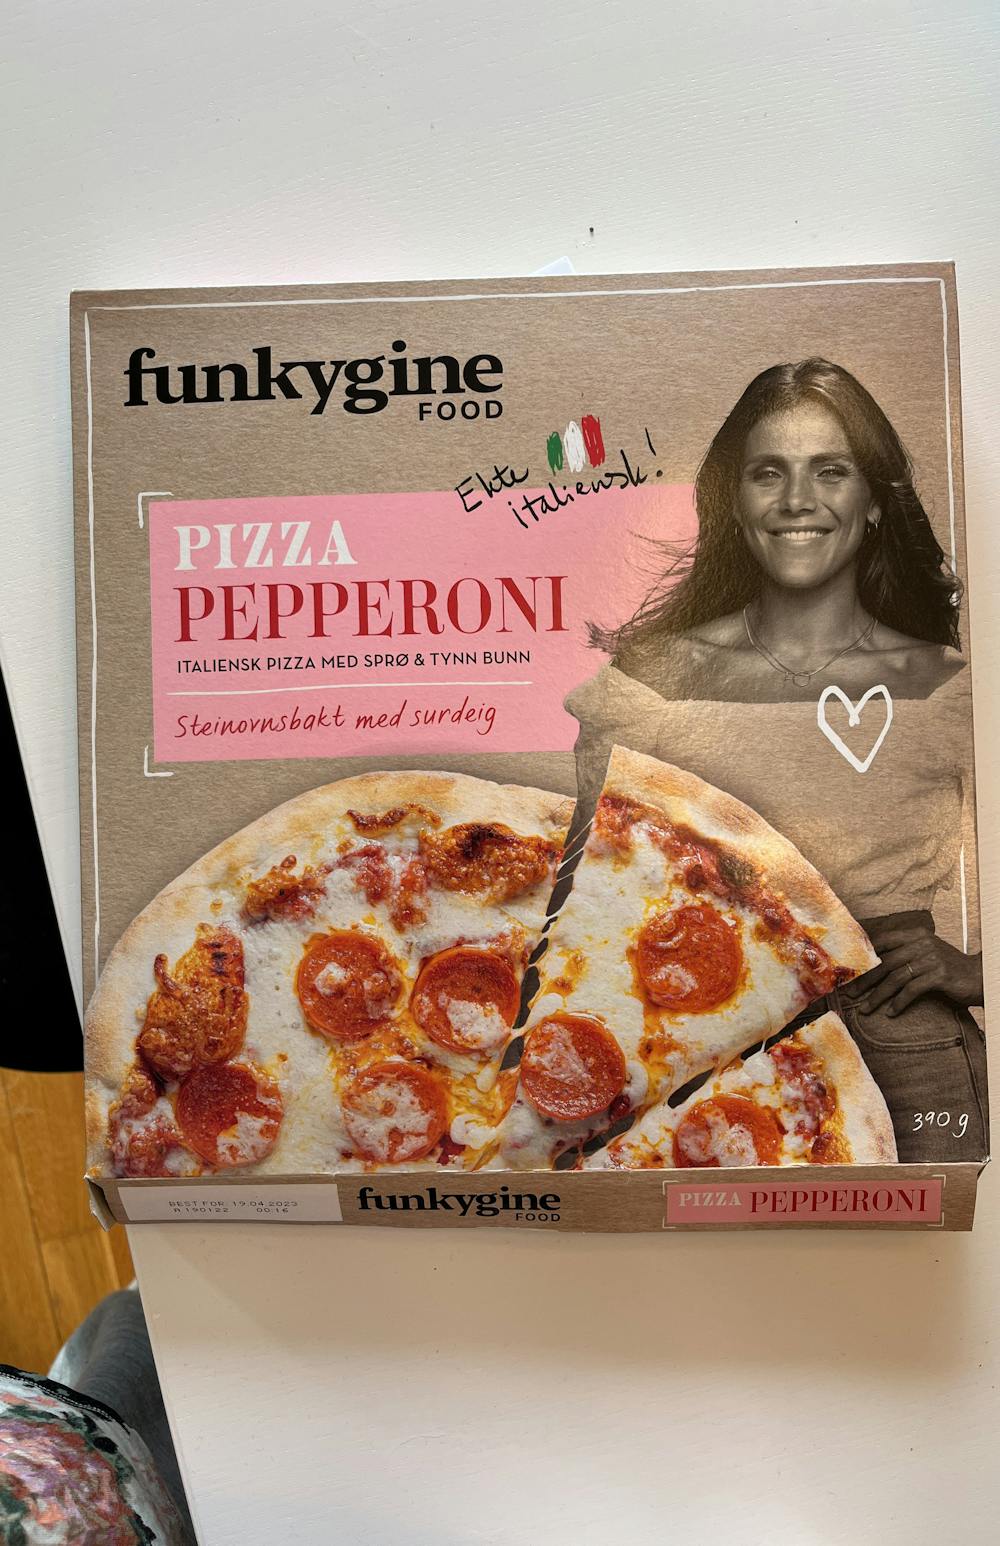 Pizza pepperoni, Funkygine food